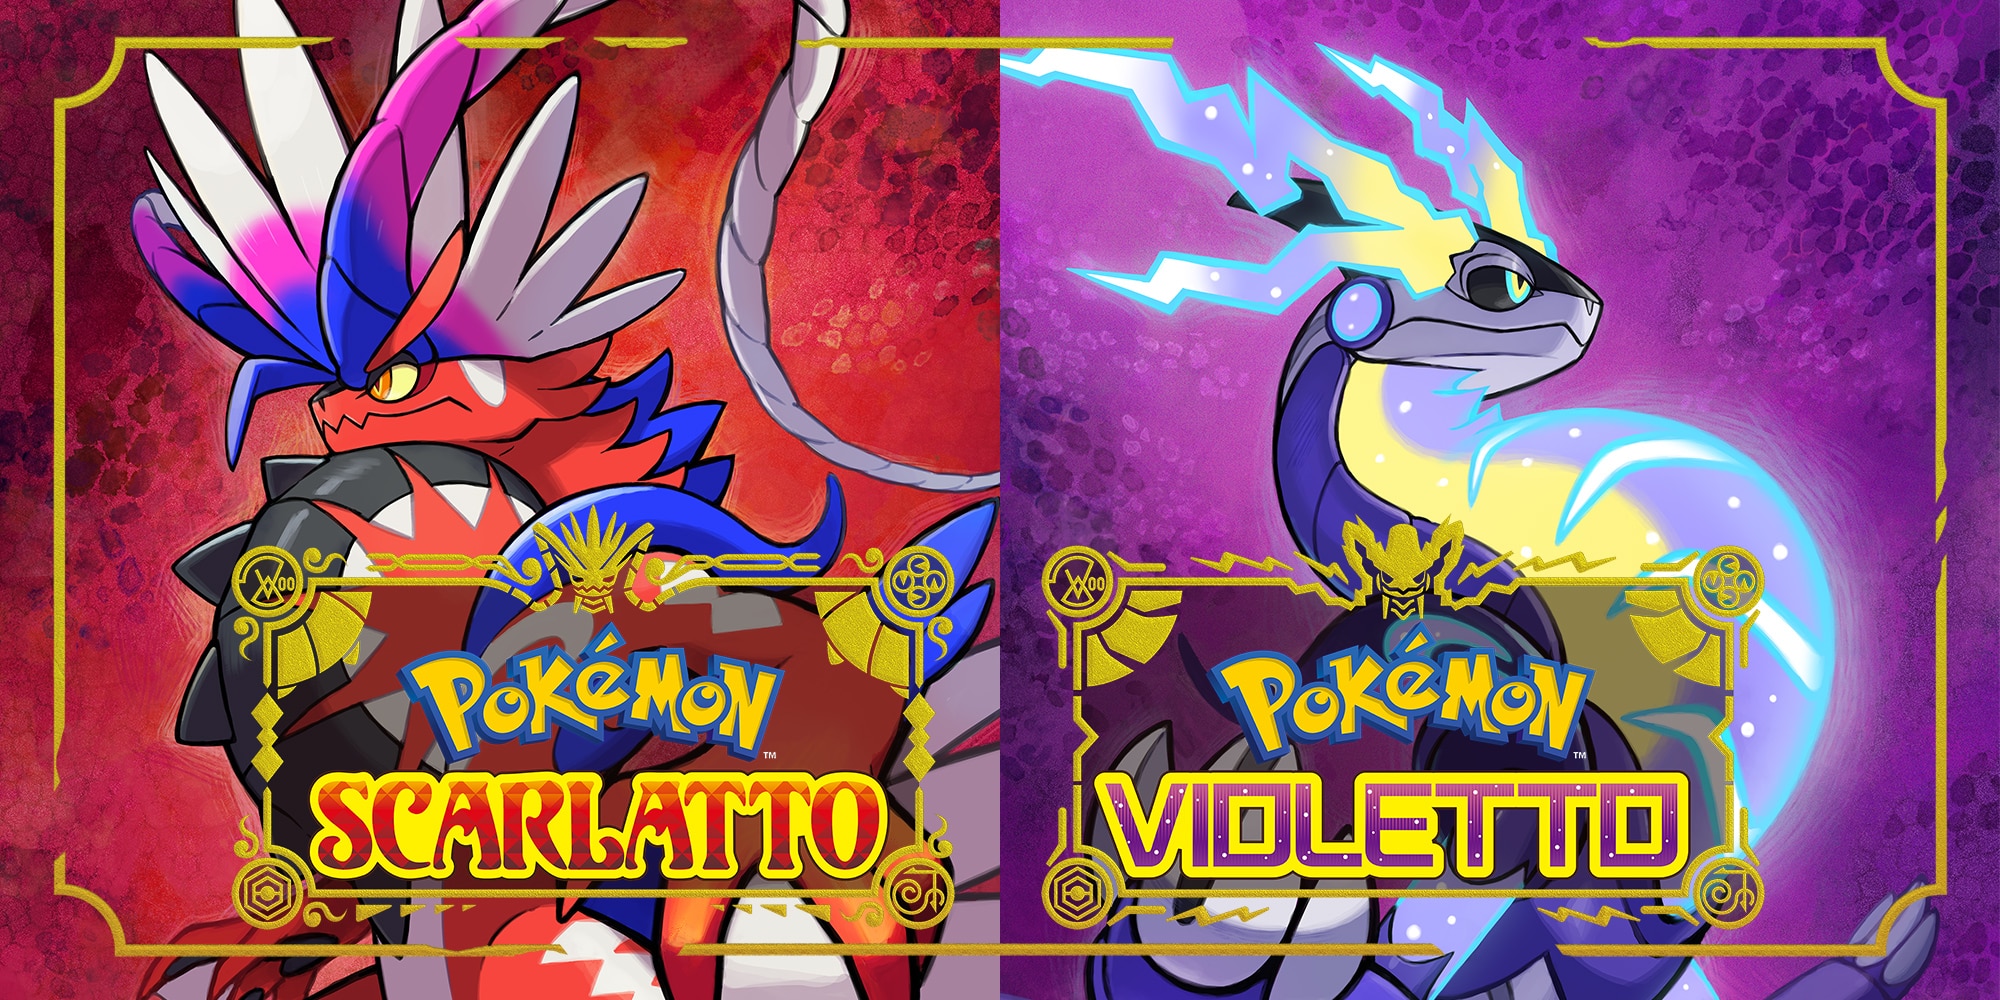 Pokémon Scarlatto e Violetto "distrutto" da Digital Foundry! 1